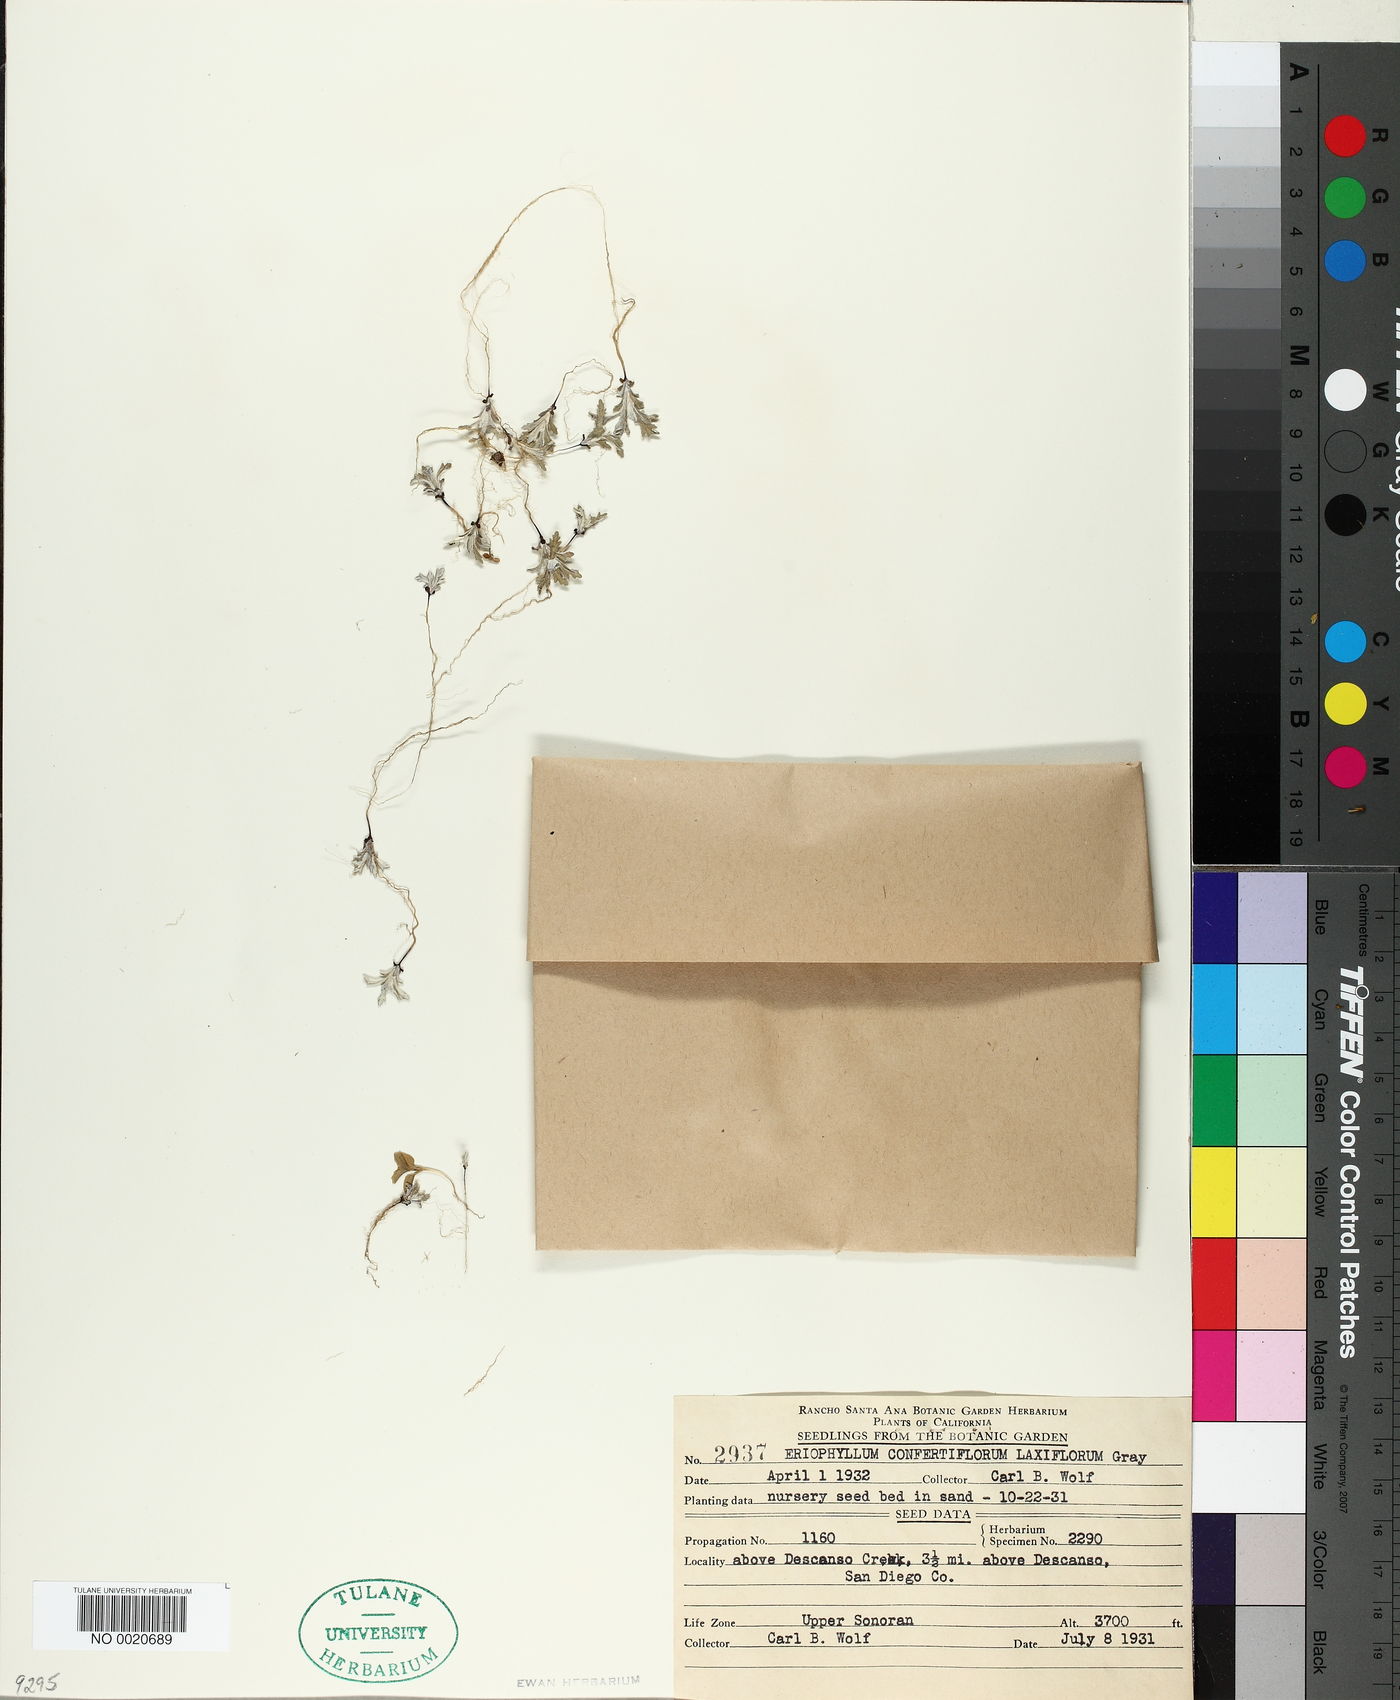 Eriophyllum confertiflorum var. laxiflorum image